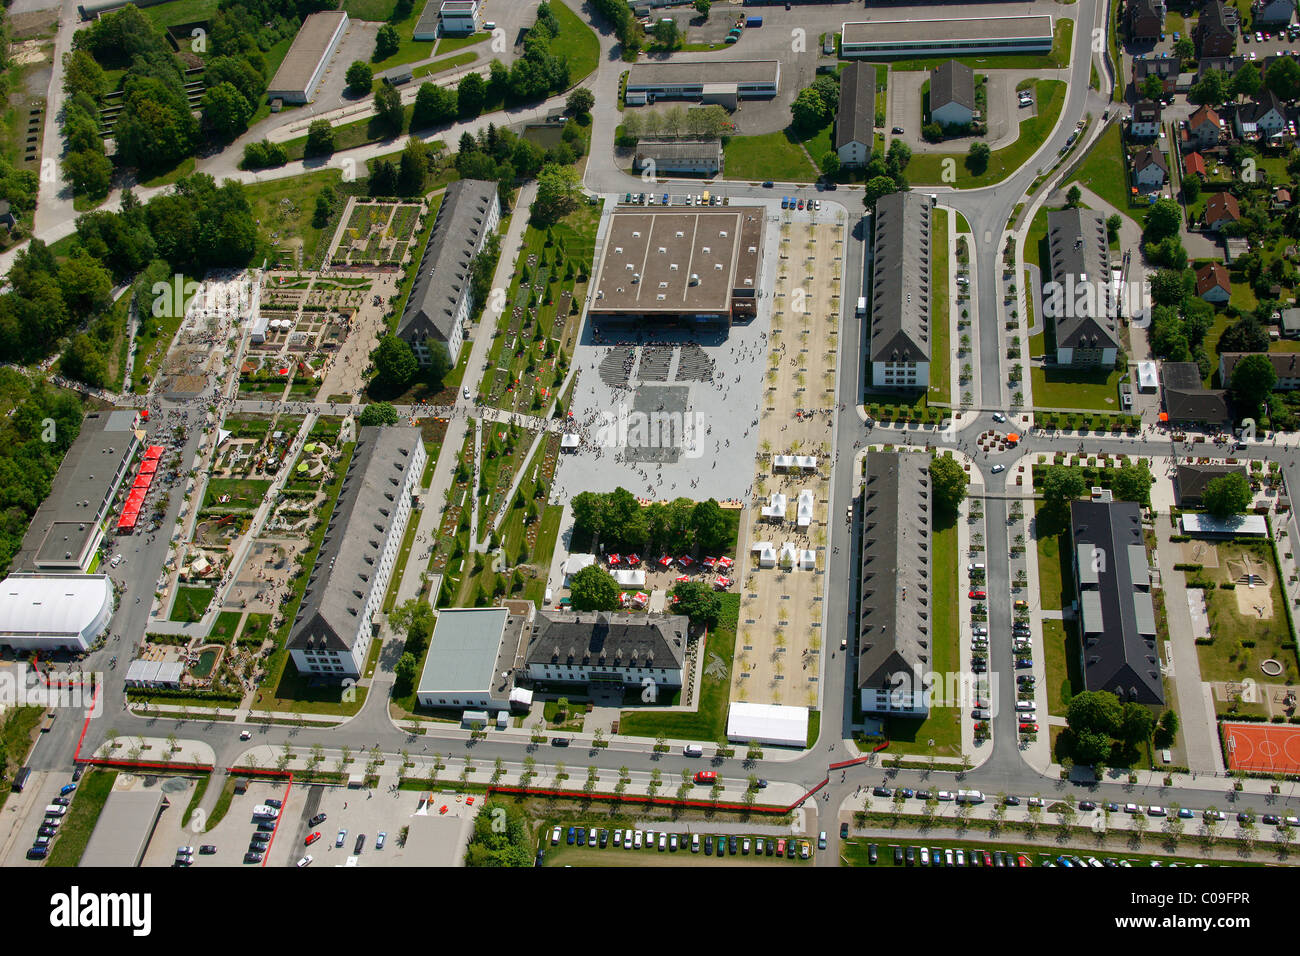 Aerial view, Landesgartenschau Country Garden Exhibition Hemer, Maerkischer Kreis district, Sauerland region Stock Photo